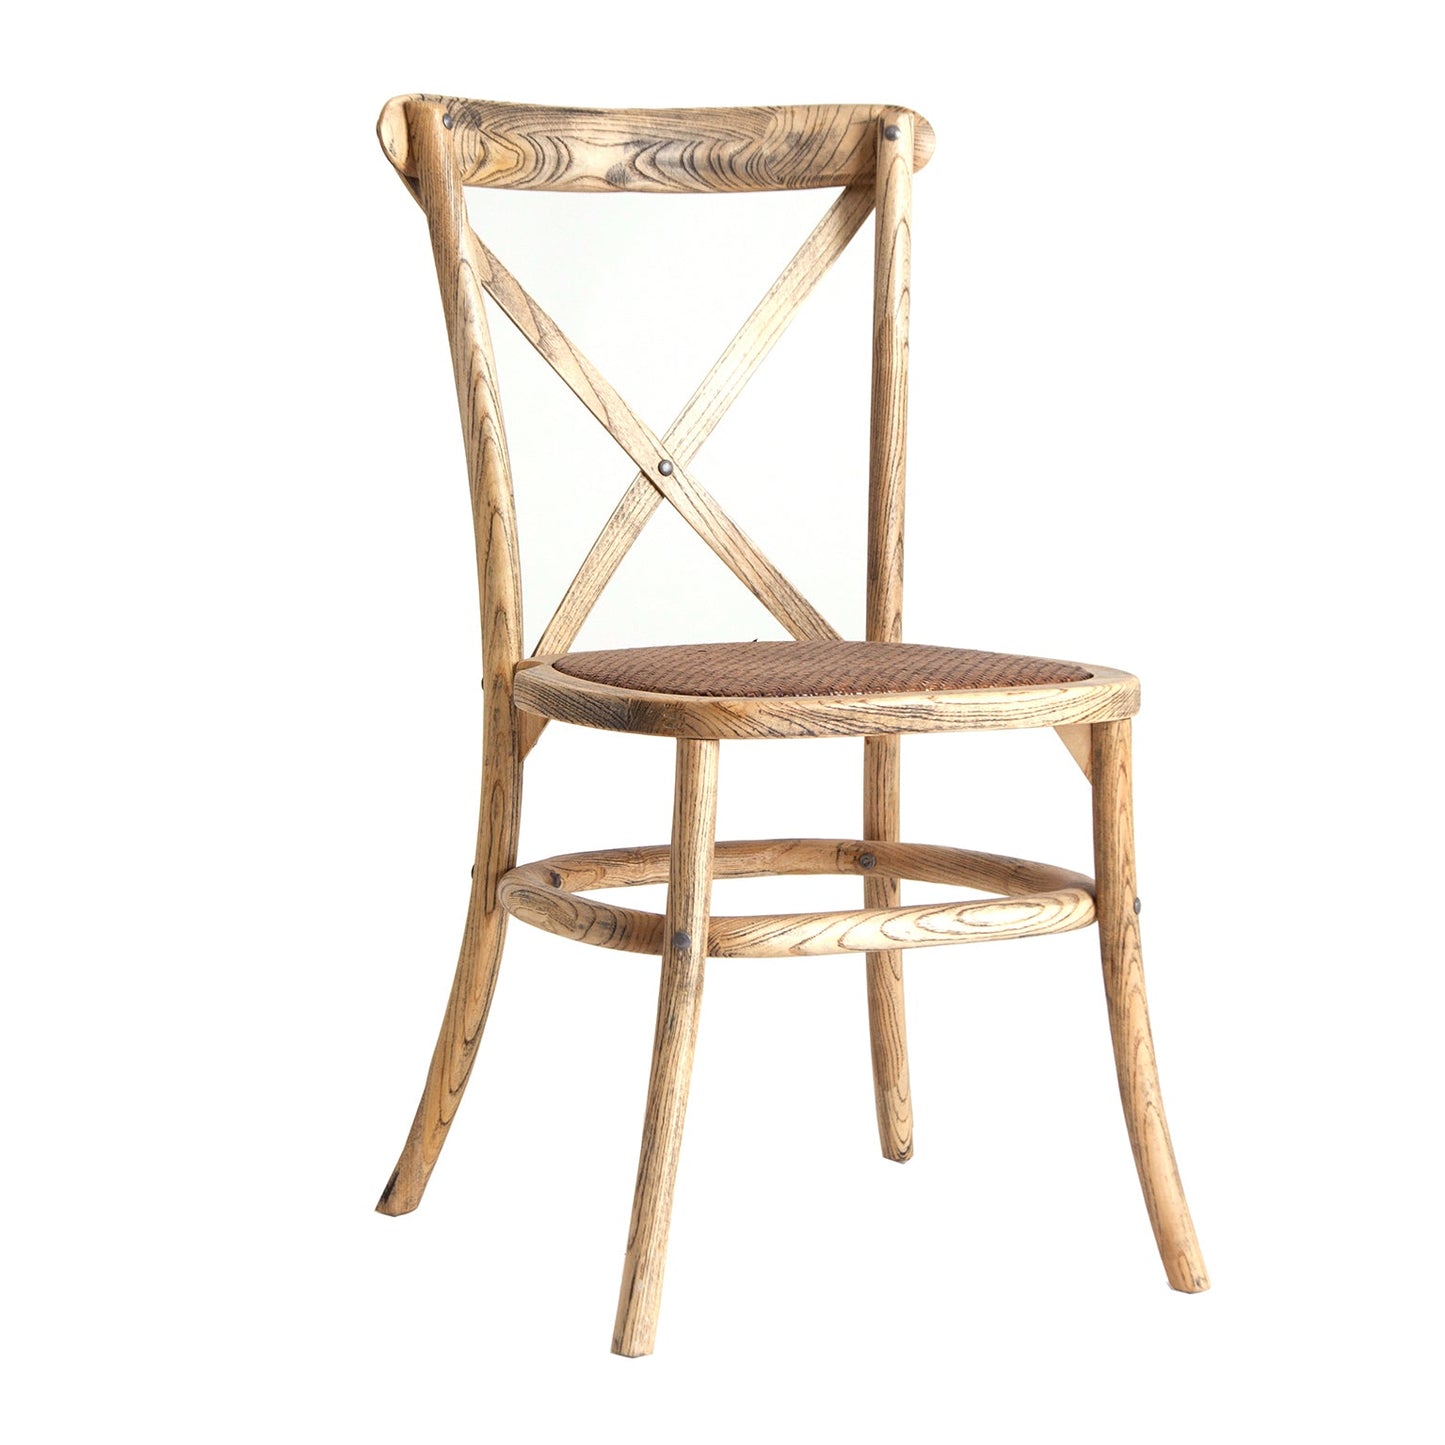 Chair Landas in Natural Colour